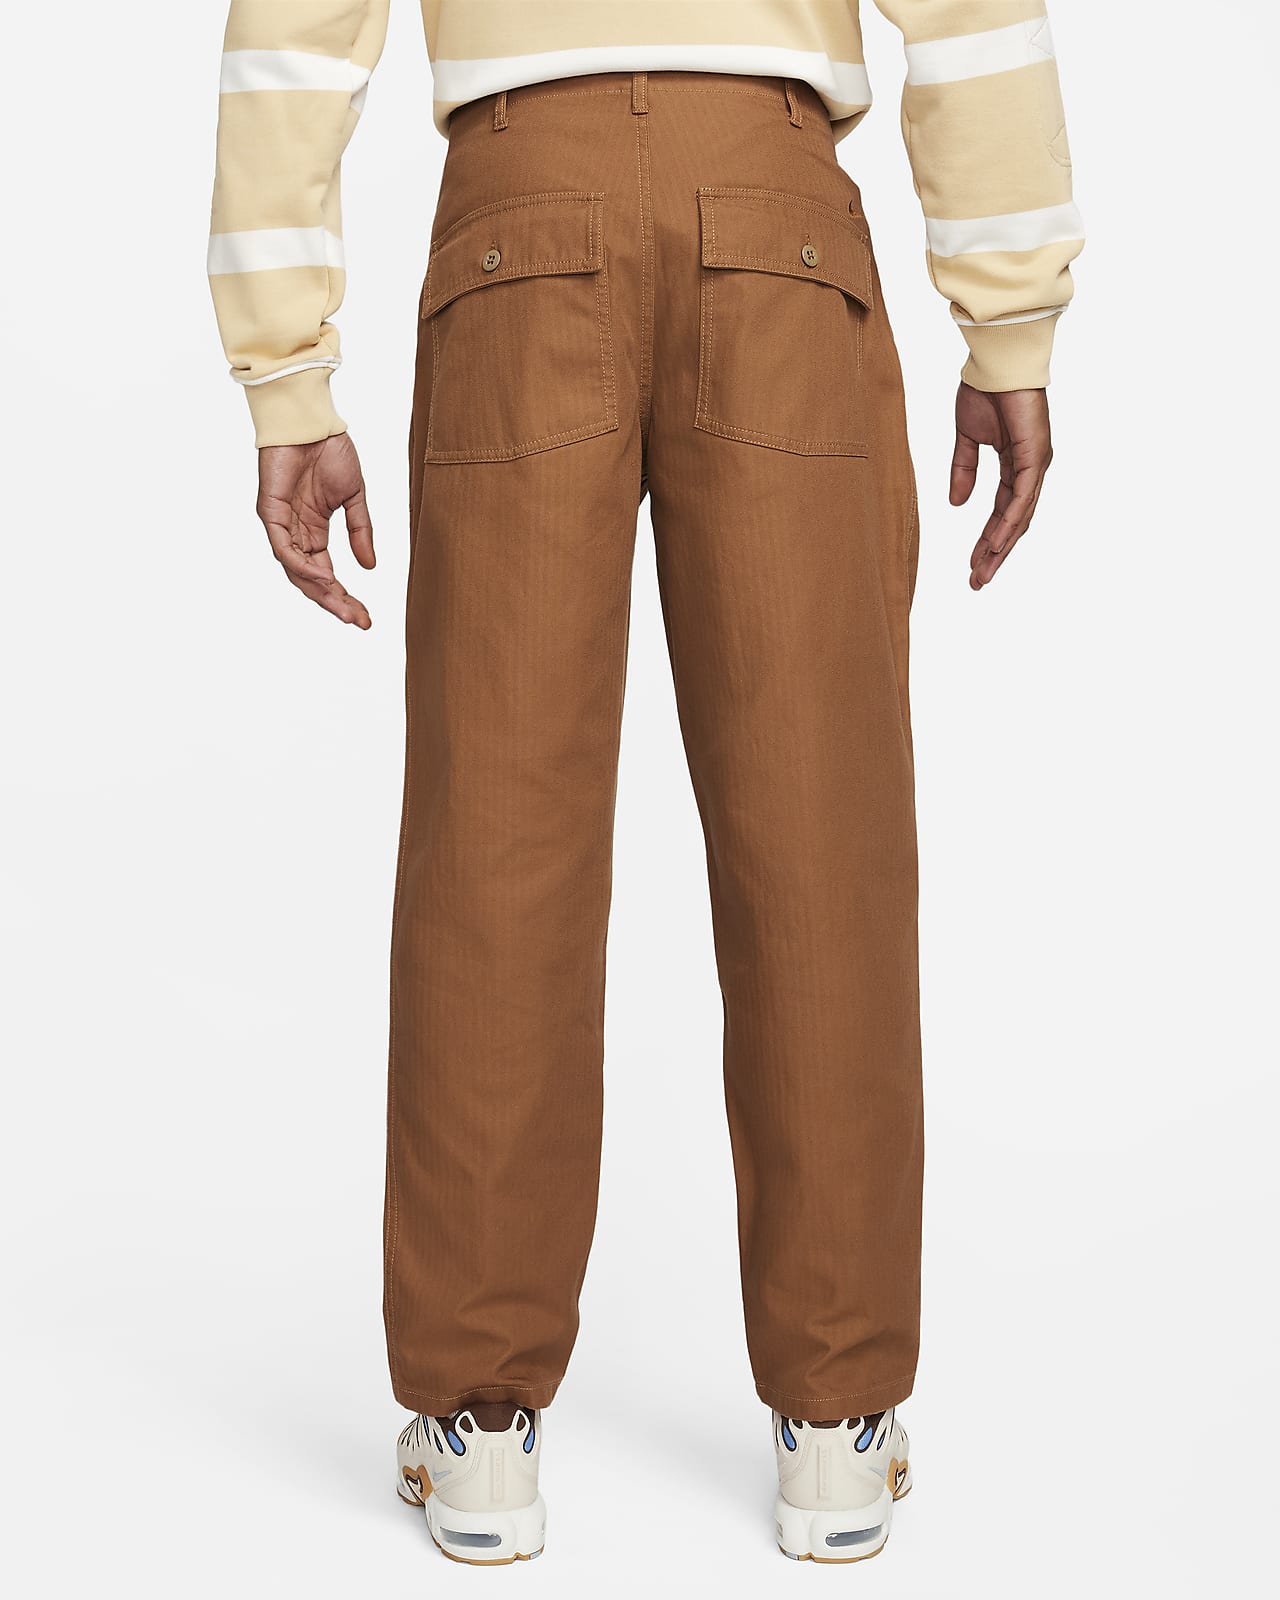 Winter Wear Brown Trousers. Nike CA